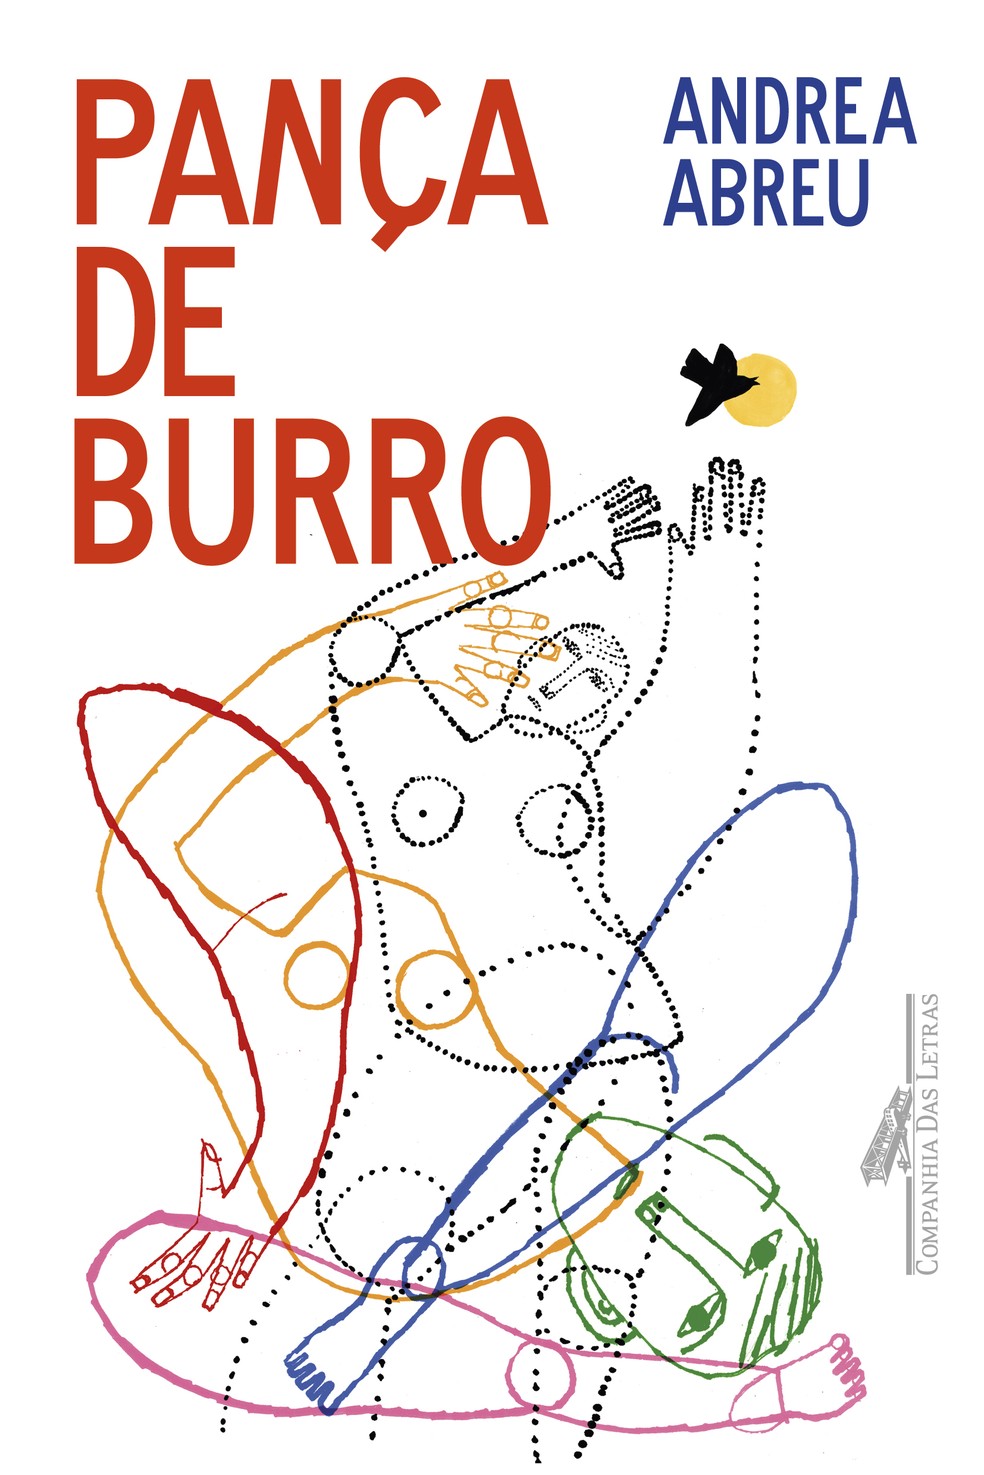 Capa de "Pança de burro", romance de estreia da escritora espanhola Andrea Abreu, publicado pela Companhia das Letras — Foto: Reprodução